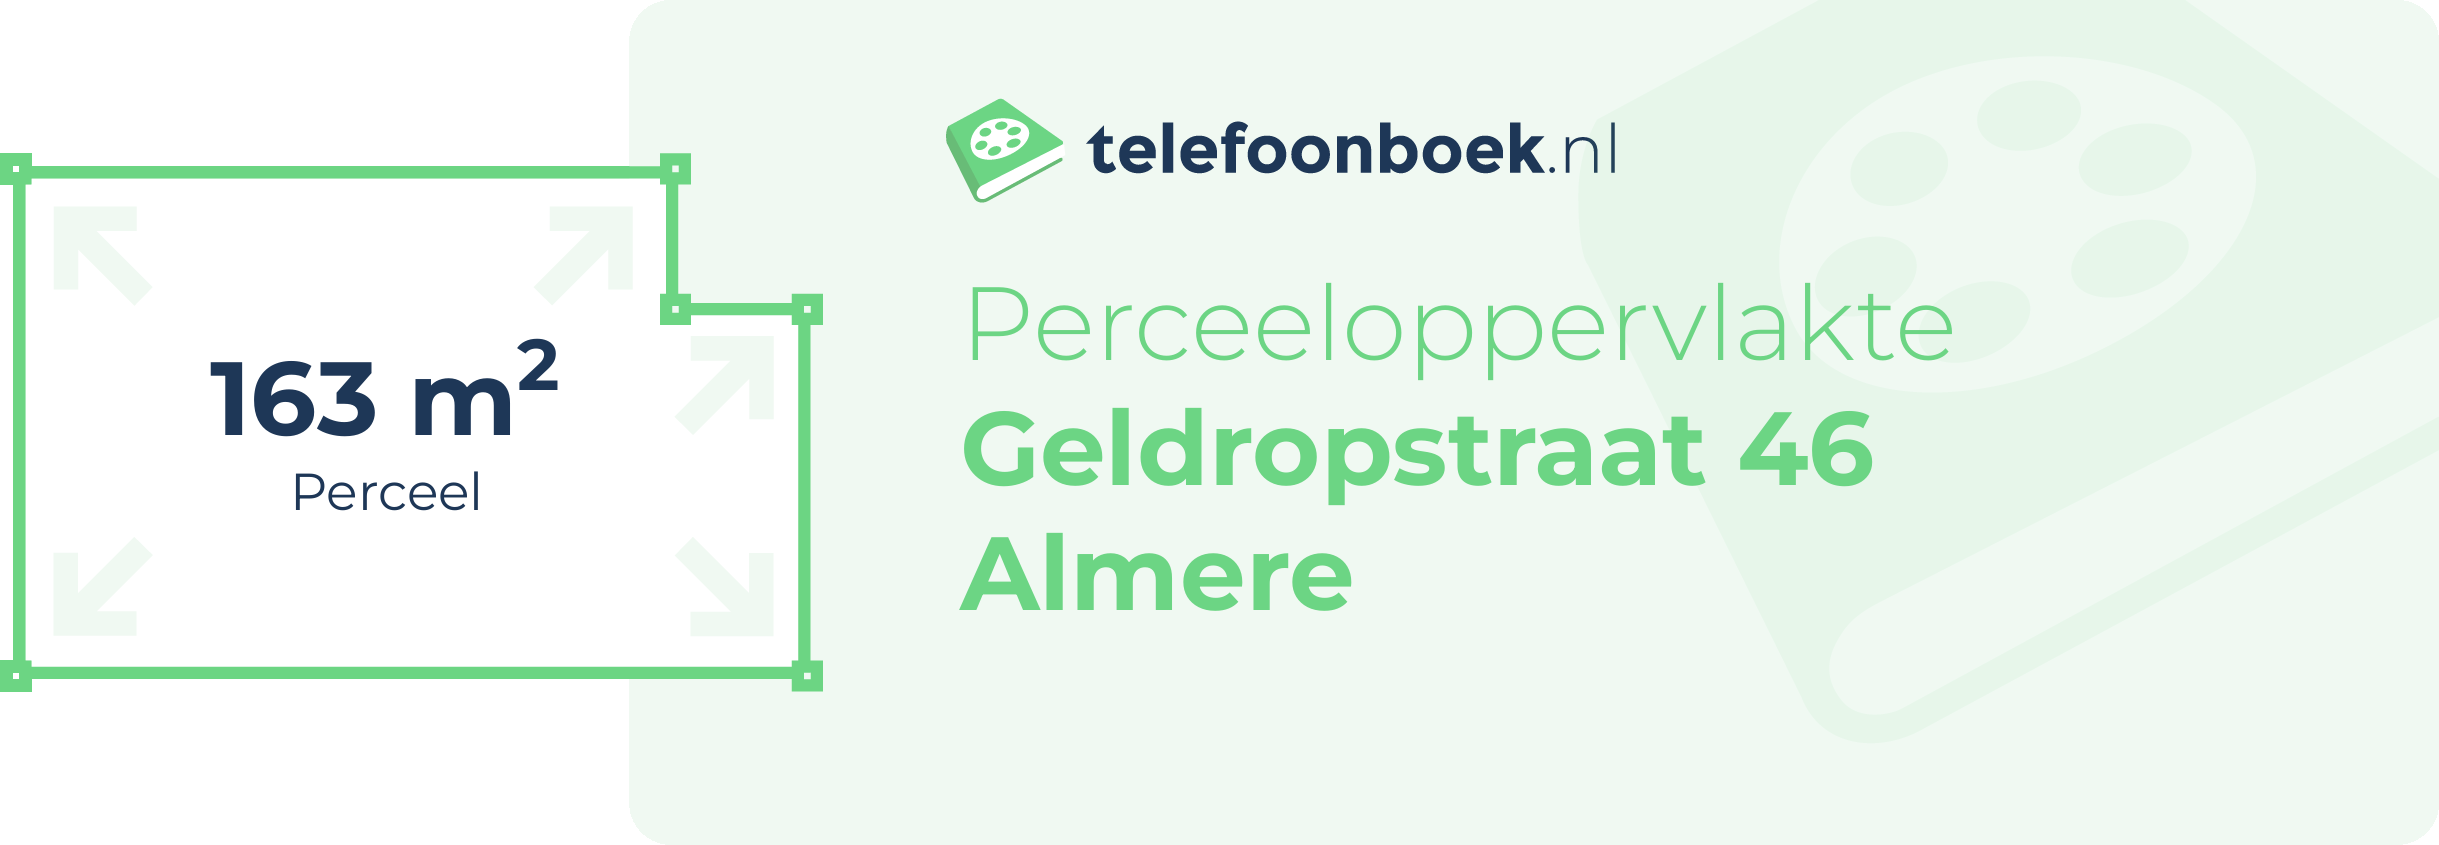 Perceeloppervlakte Geldropstraat 46 Almere